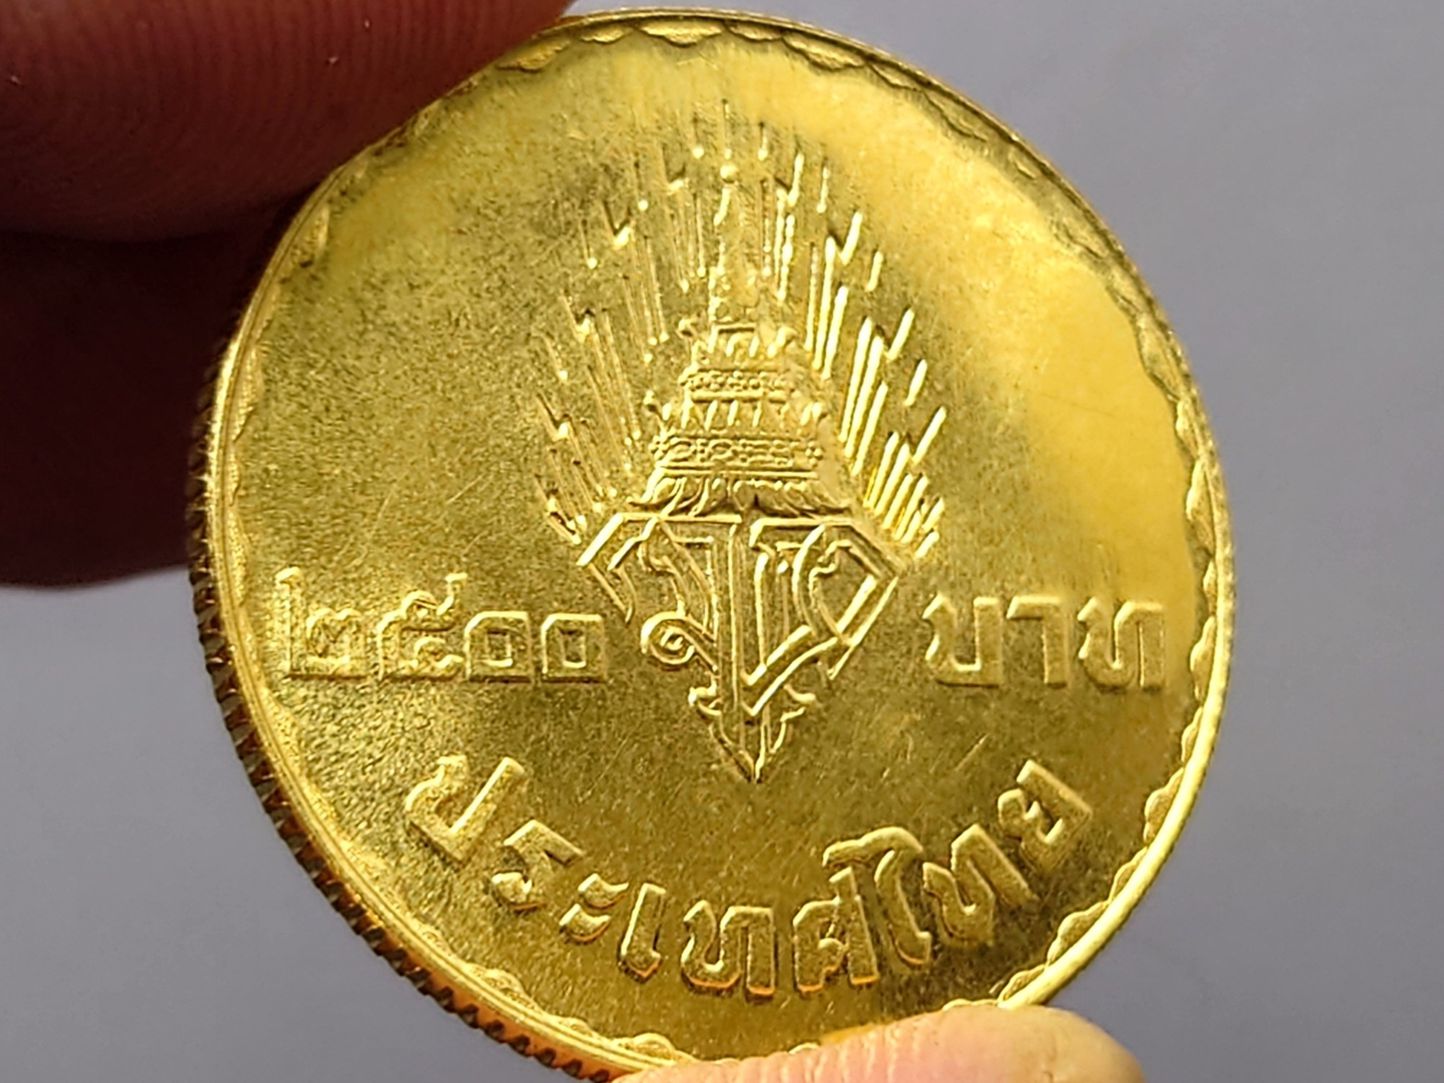 เหรียญทองคำ 2500 บาท ที่ระลึกพระราชพิธีอภิเษกสมรส สมเด็จพระบรมโอรสาธิราชฯ พ.ศ.2520 (หนัก 1 บาท) รูปที่ 6